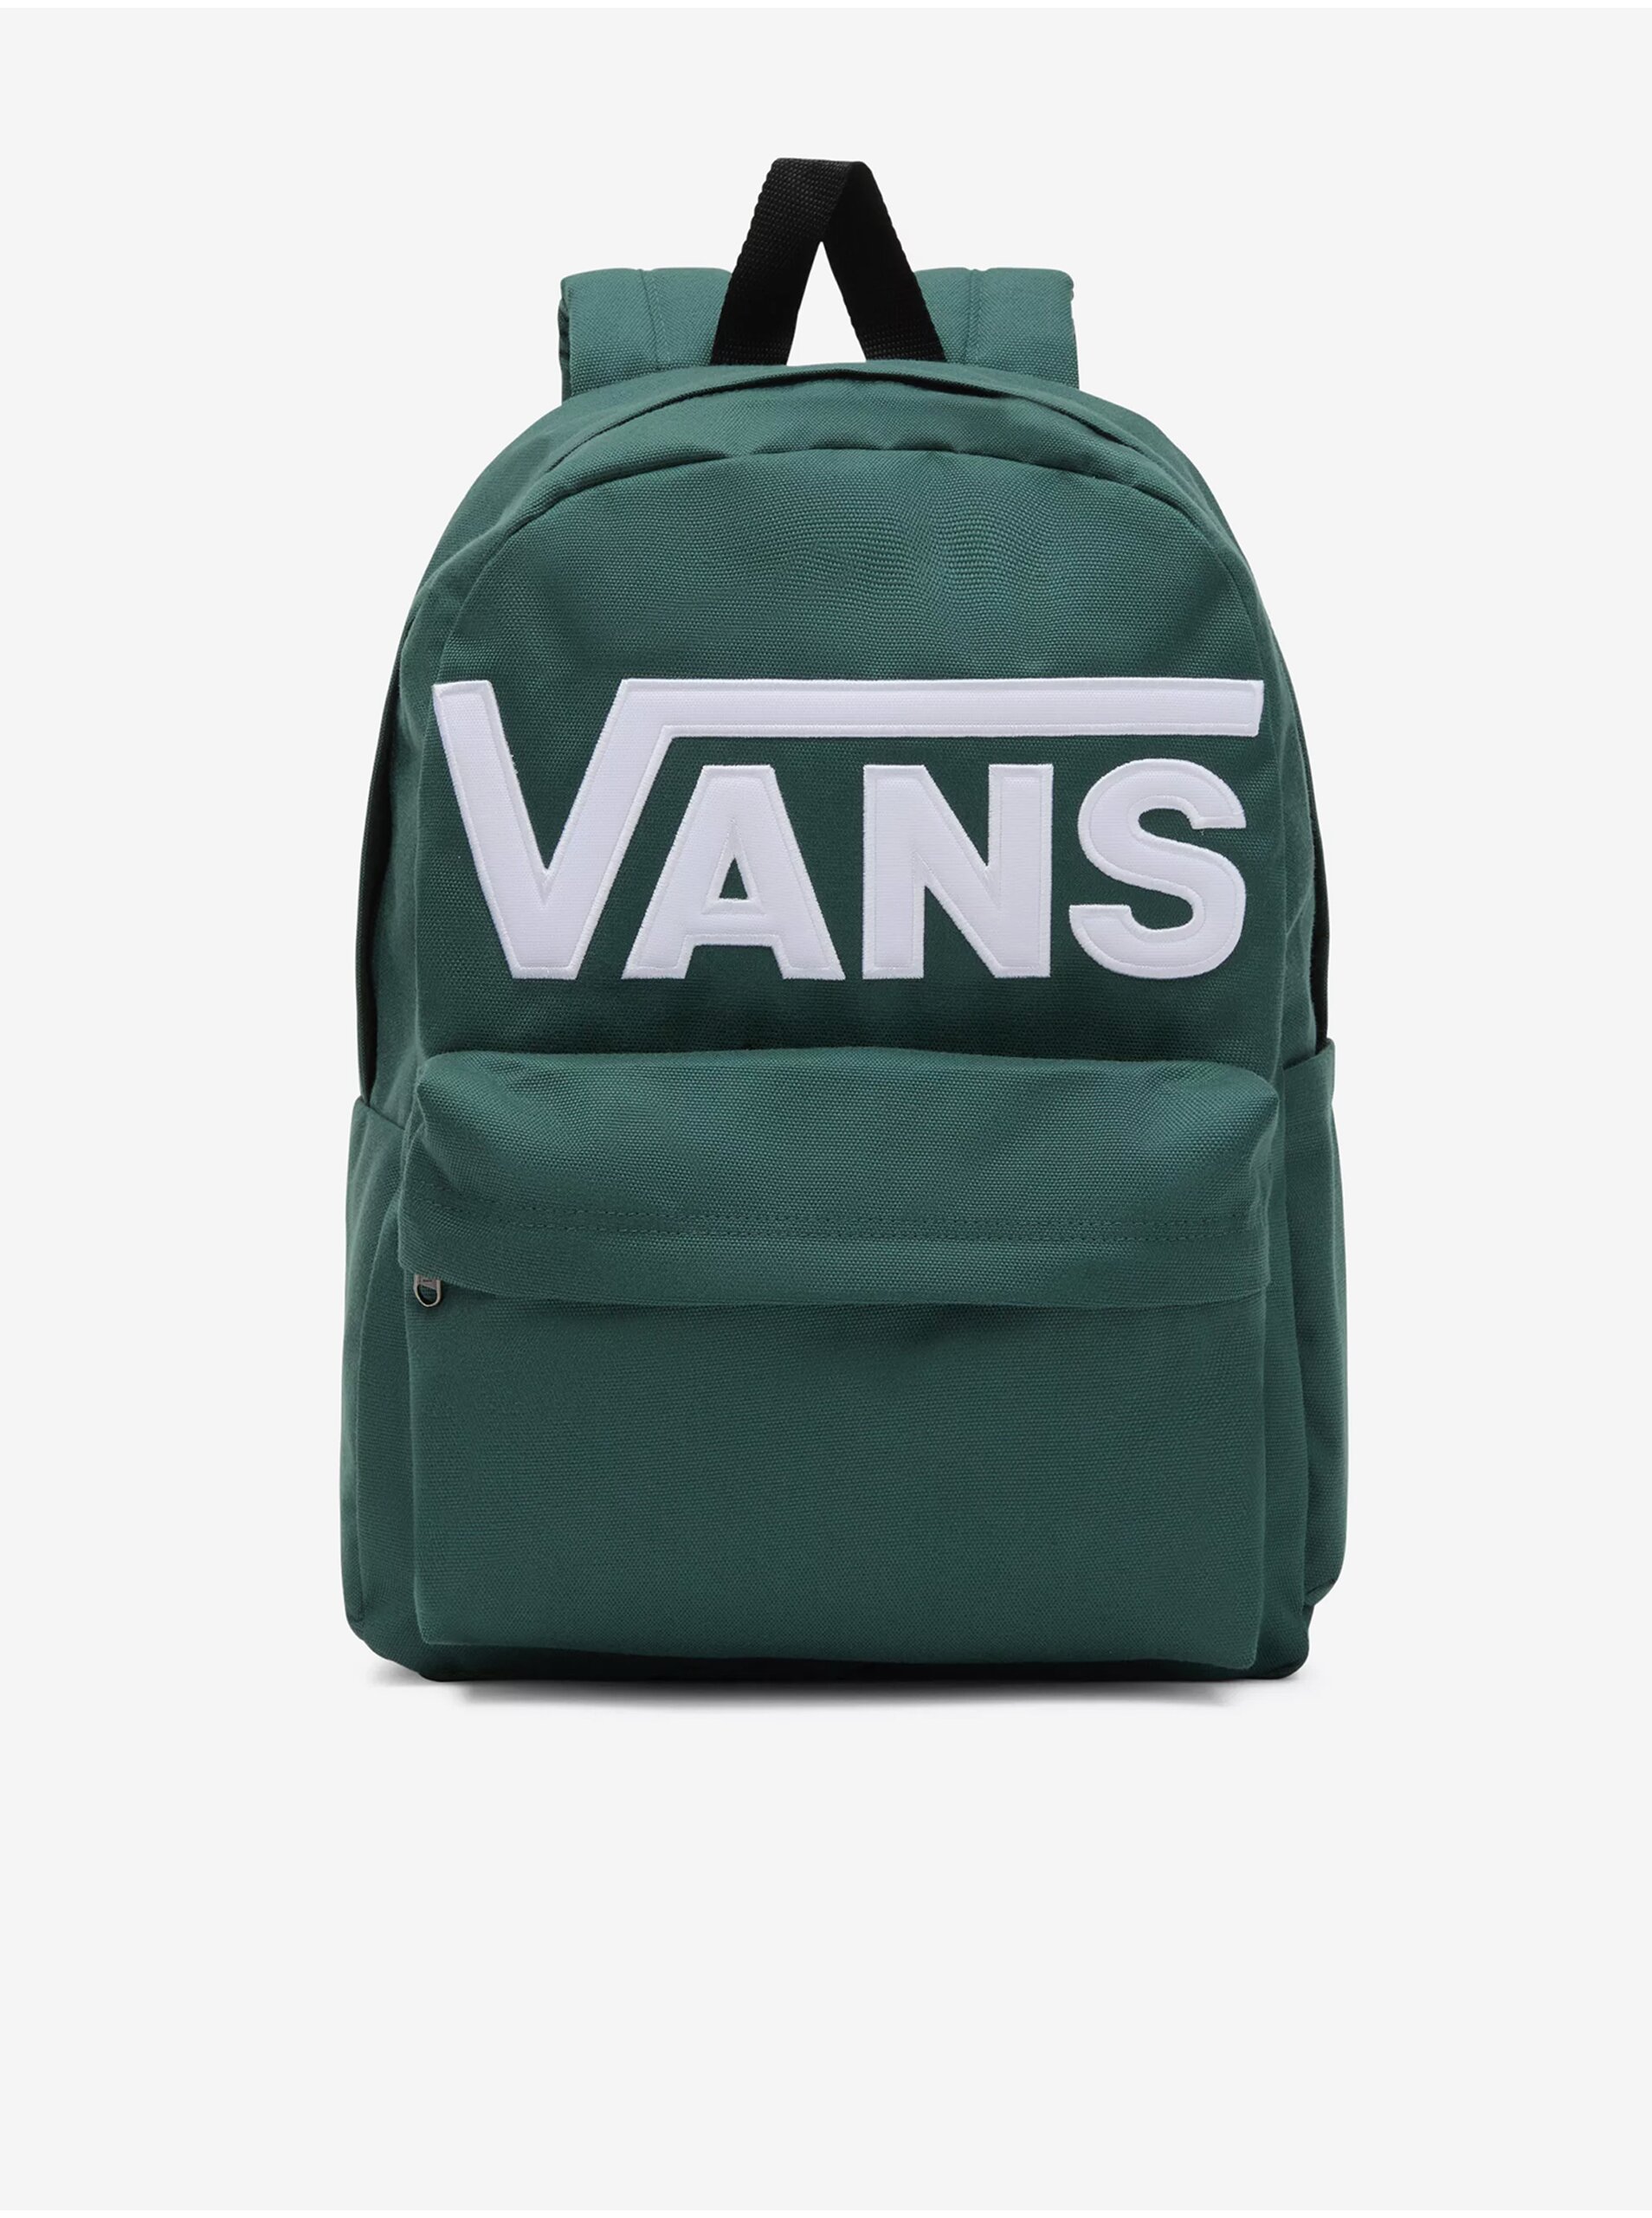 Green backpack VANS Old Skool Drop V - Men's